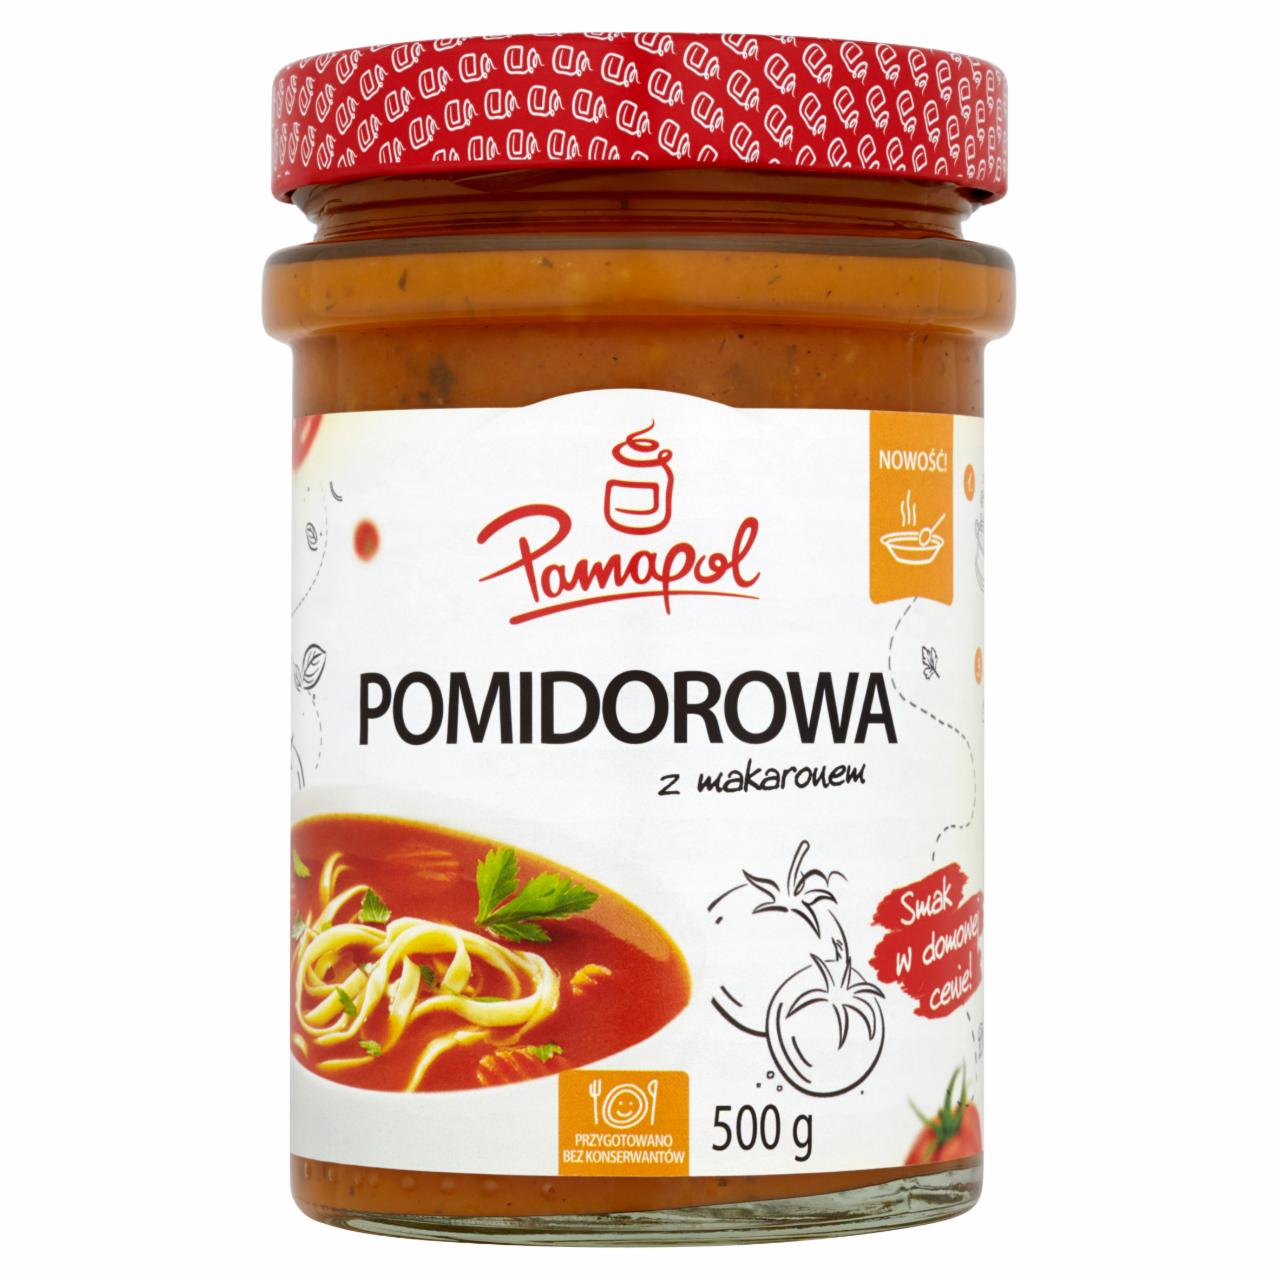 Zdjęcia - Pamapol Pomidorowa z makaronem 500 g